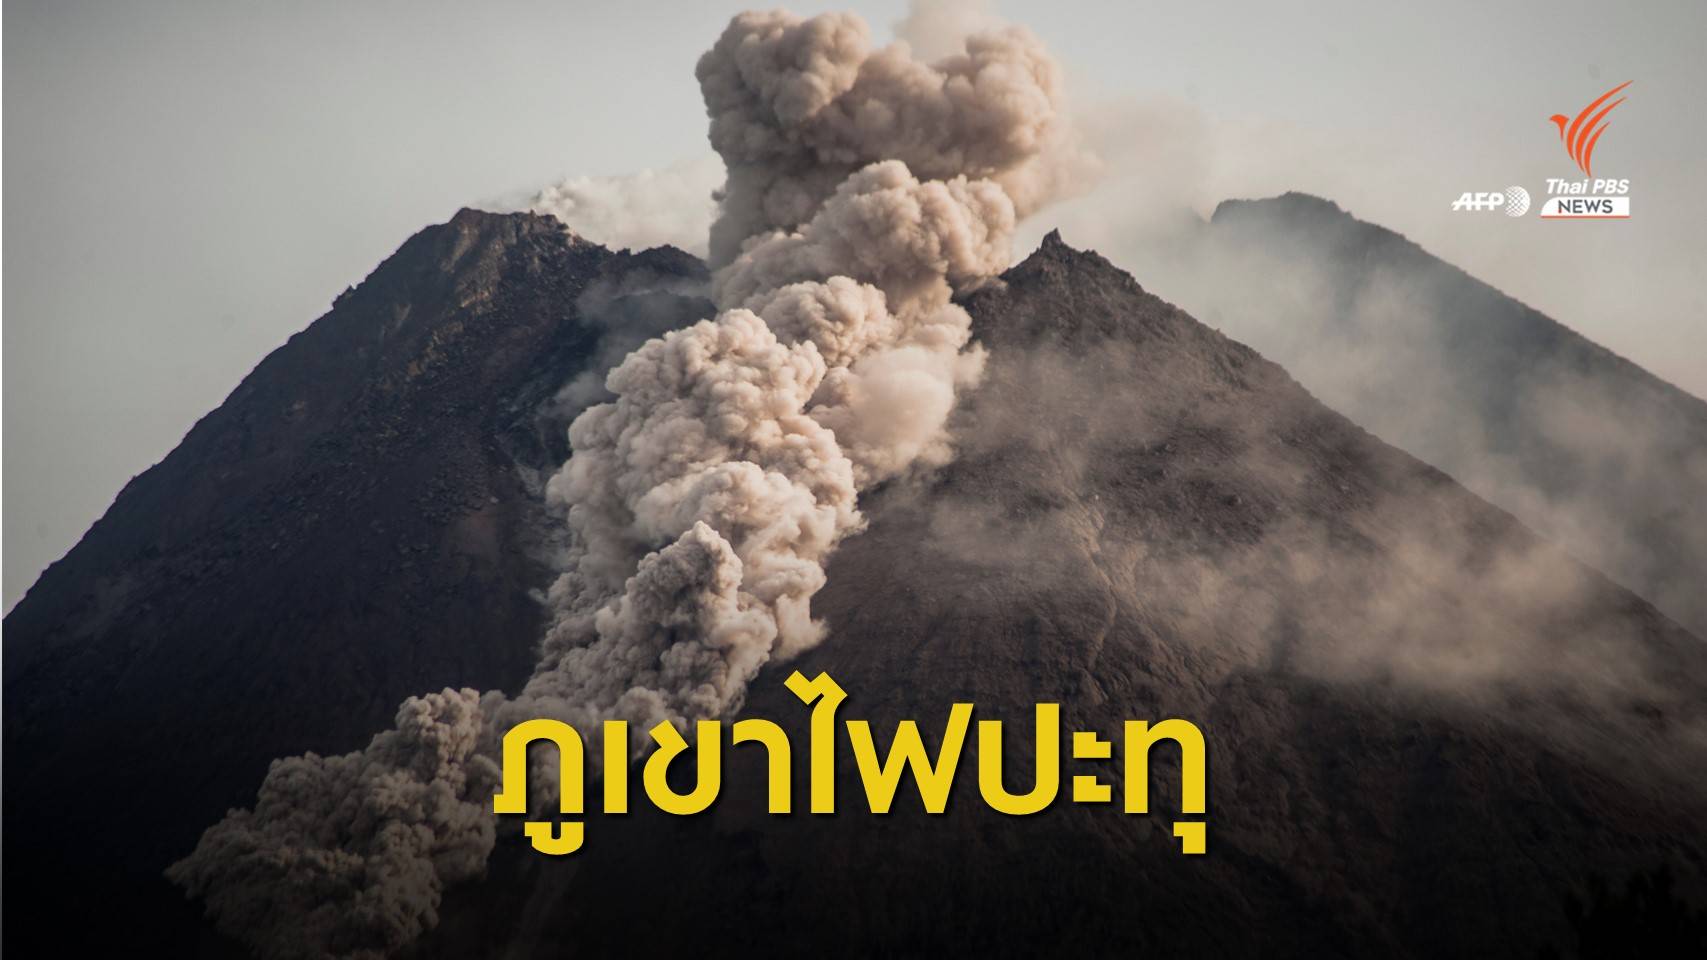 "ภูเขาไฟเมอราปี" ของอินโดนีเซียปะทุ ชาวบ้านเร่งอพยพหนีลาวา